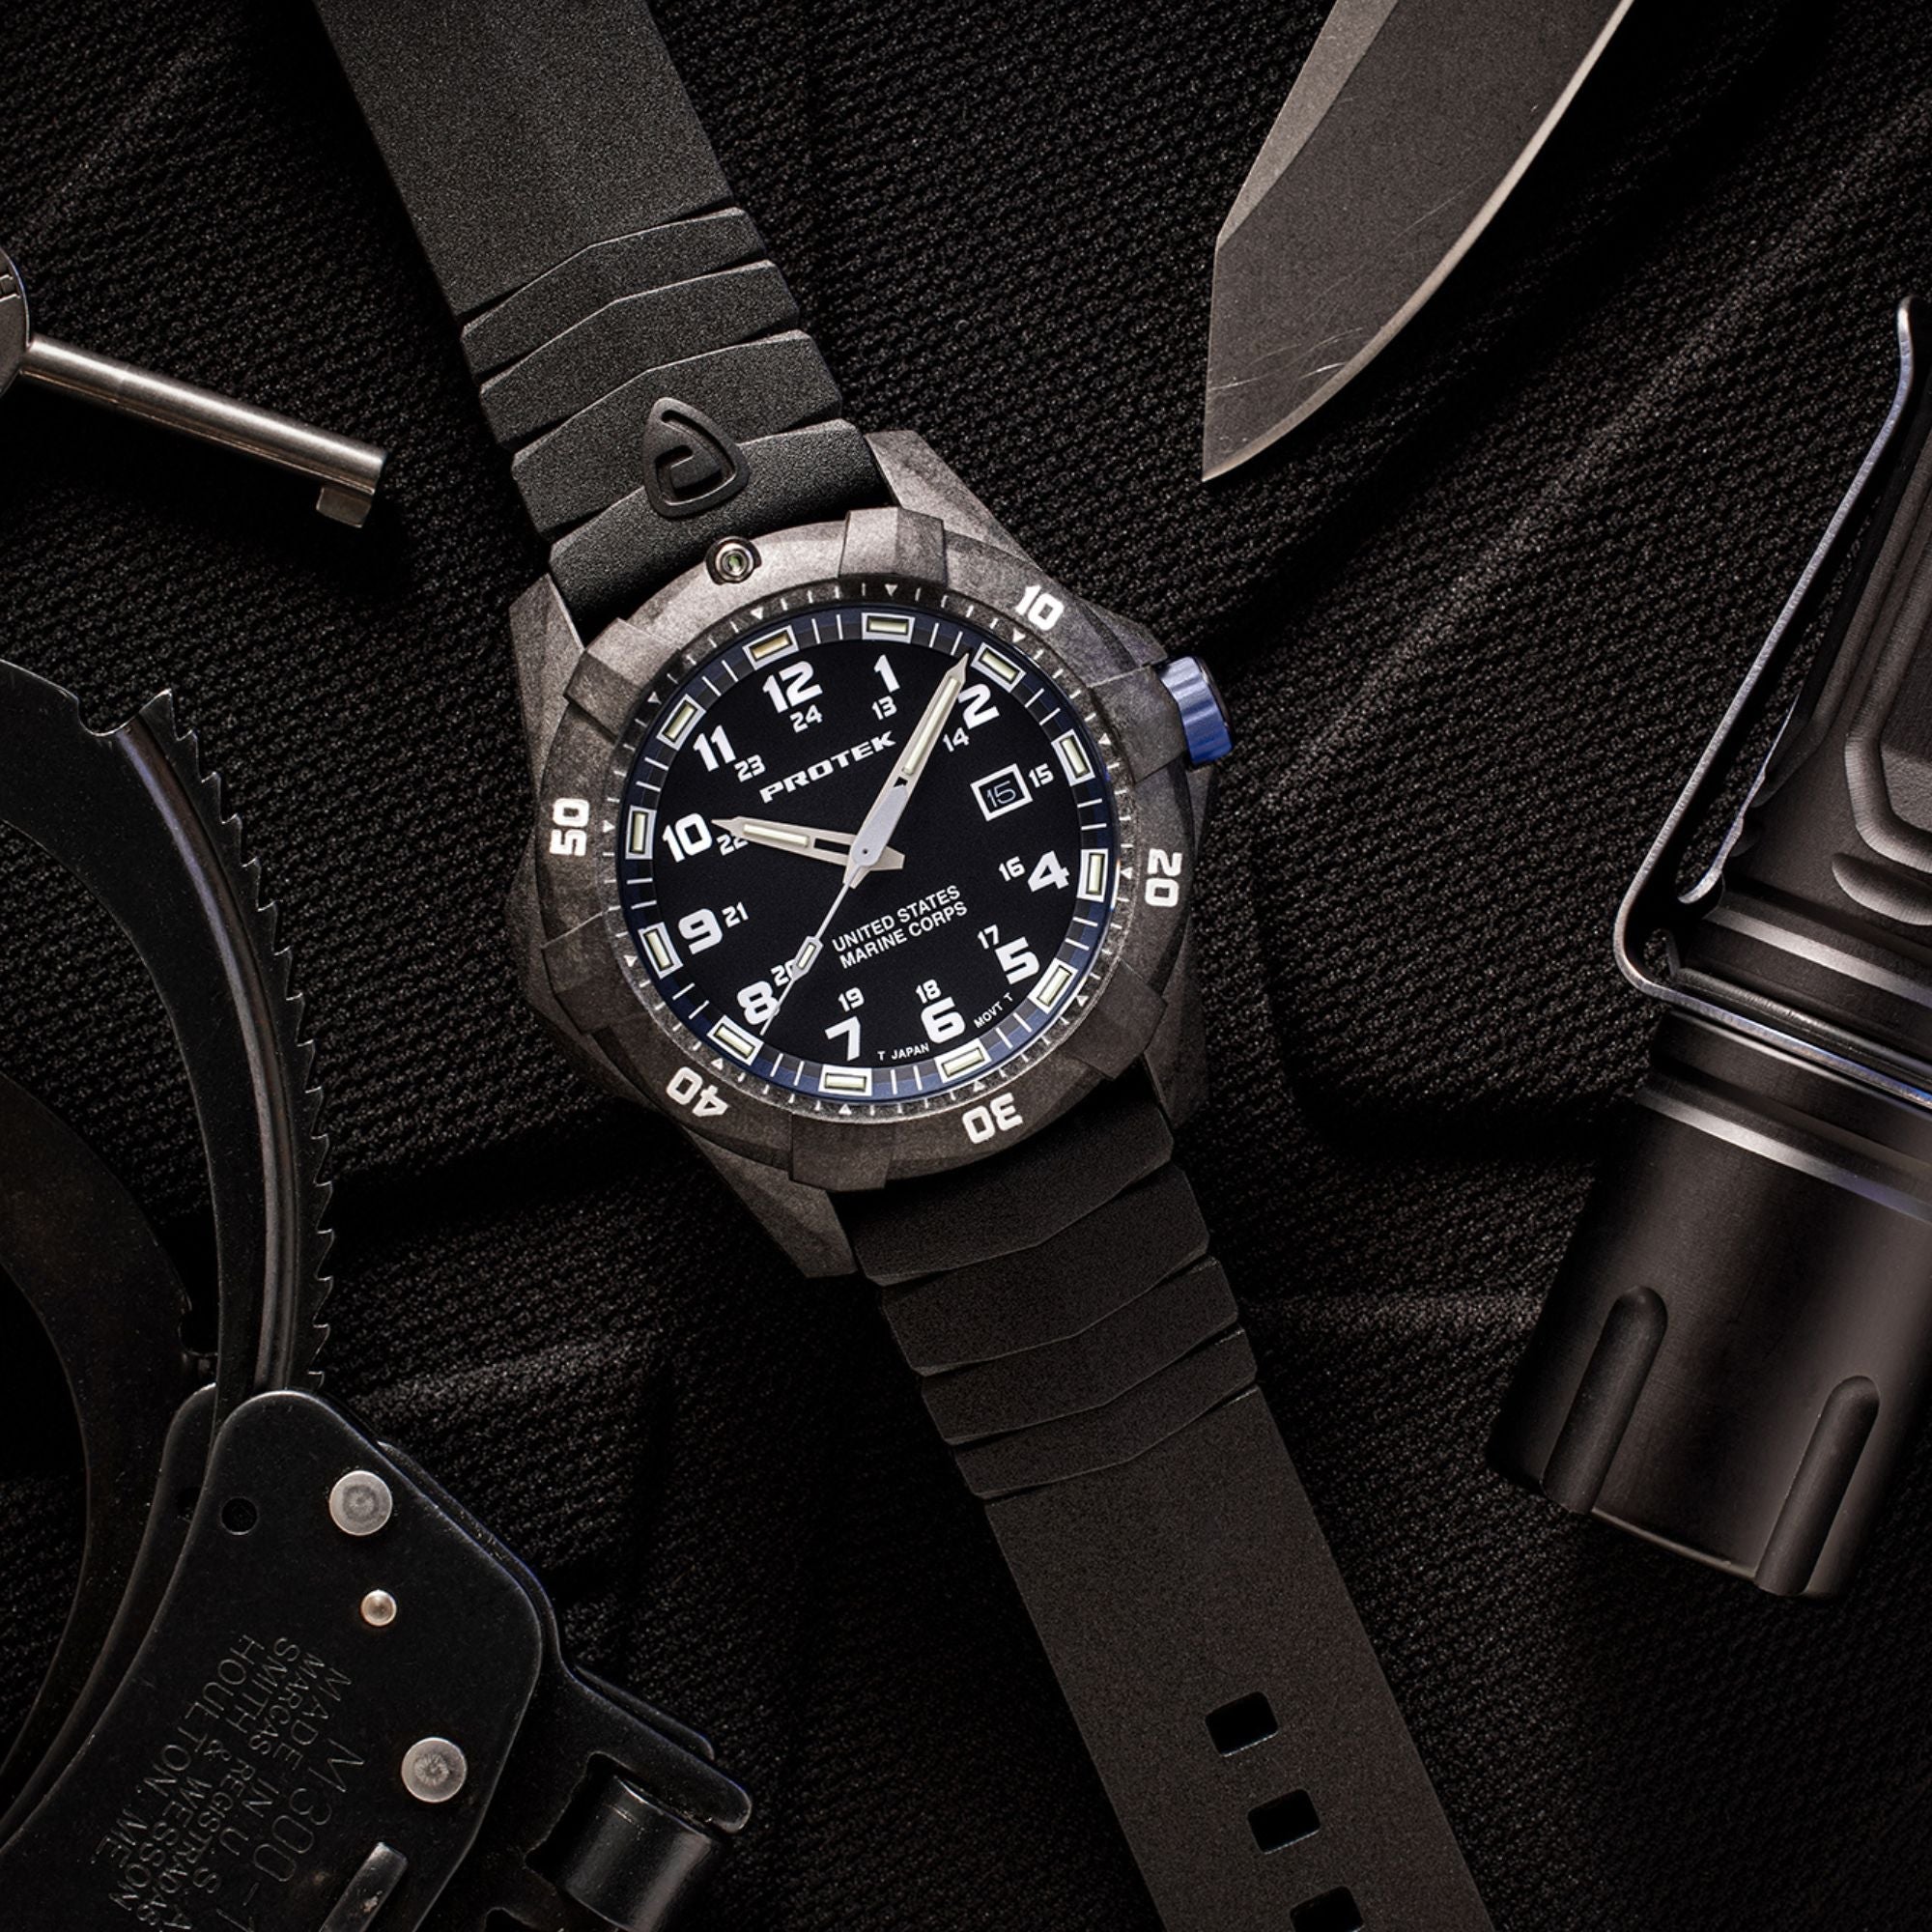 ProTek USMC Carbon Composite Dive Watch - Carbon/Black/Blue (Black Band)